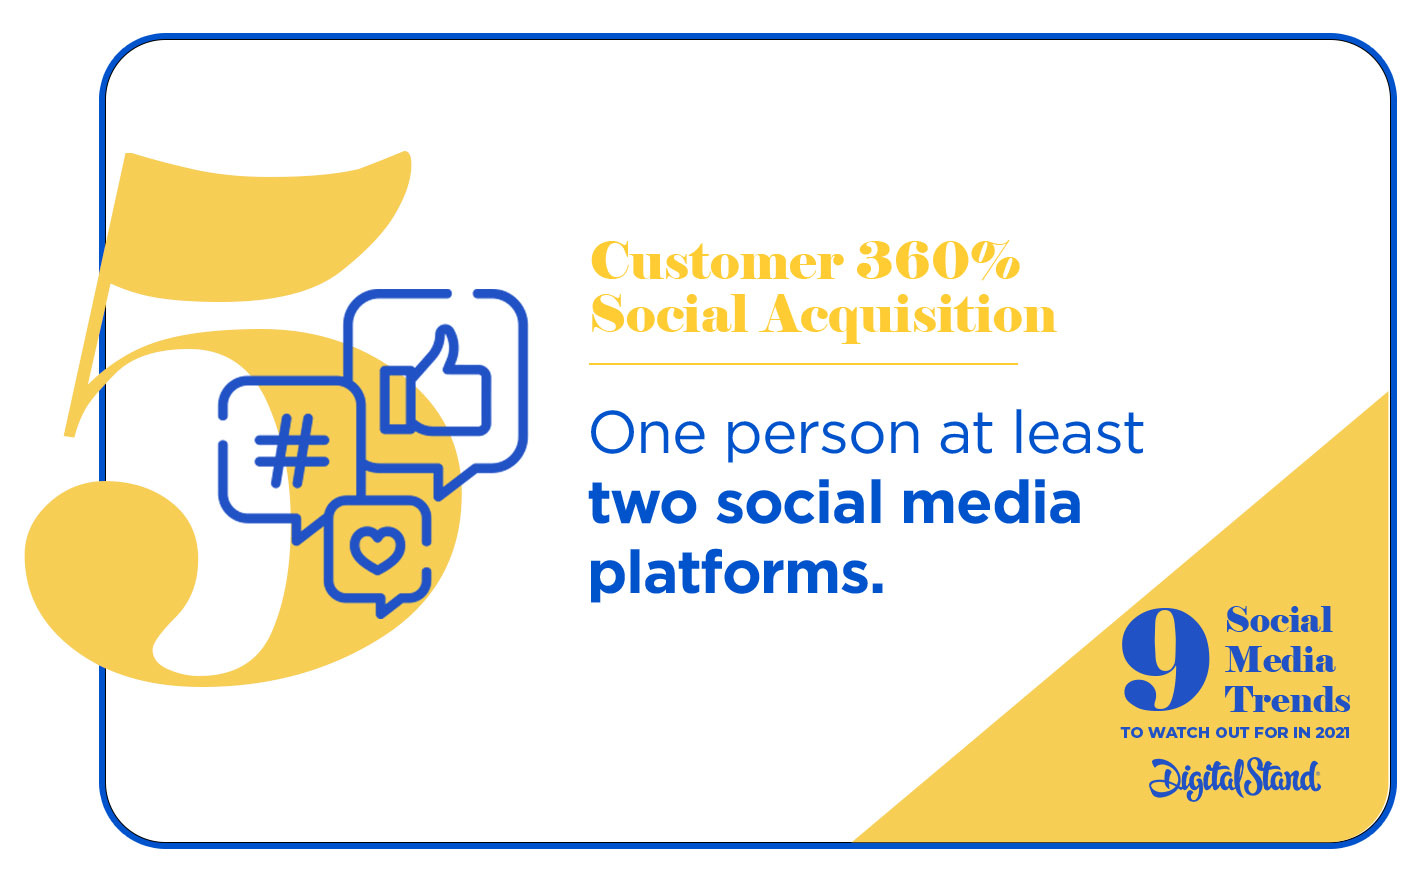 Social Media Trends - Customer Acquisition